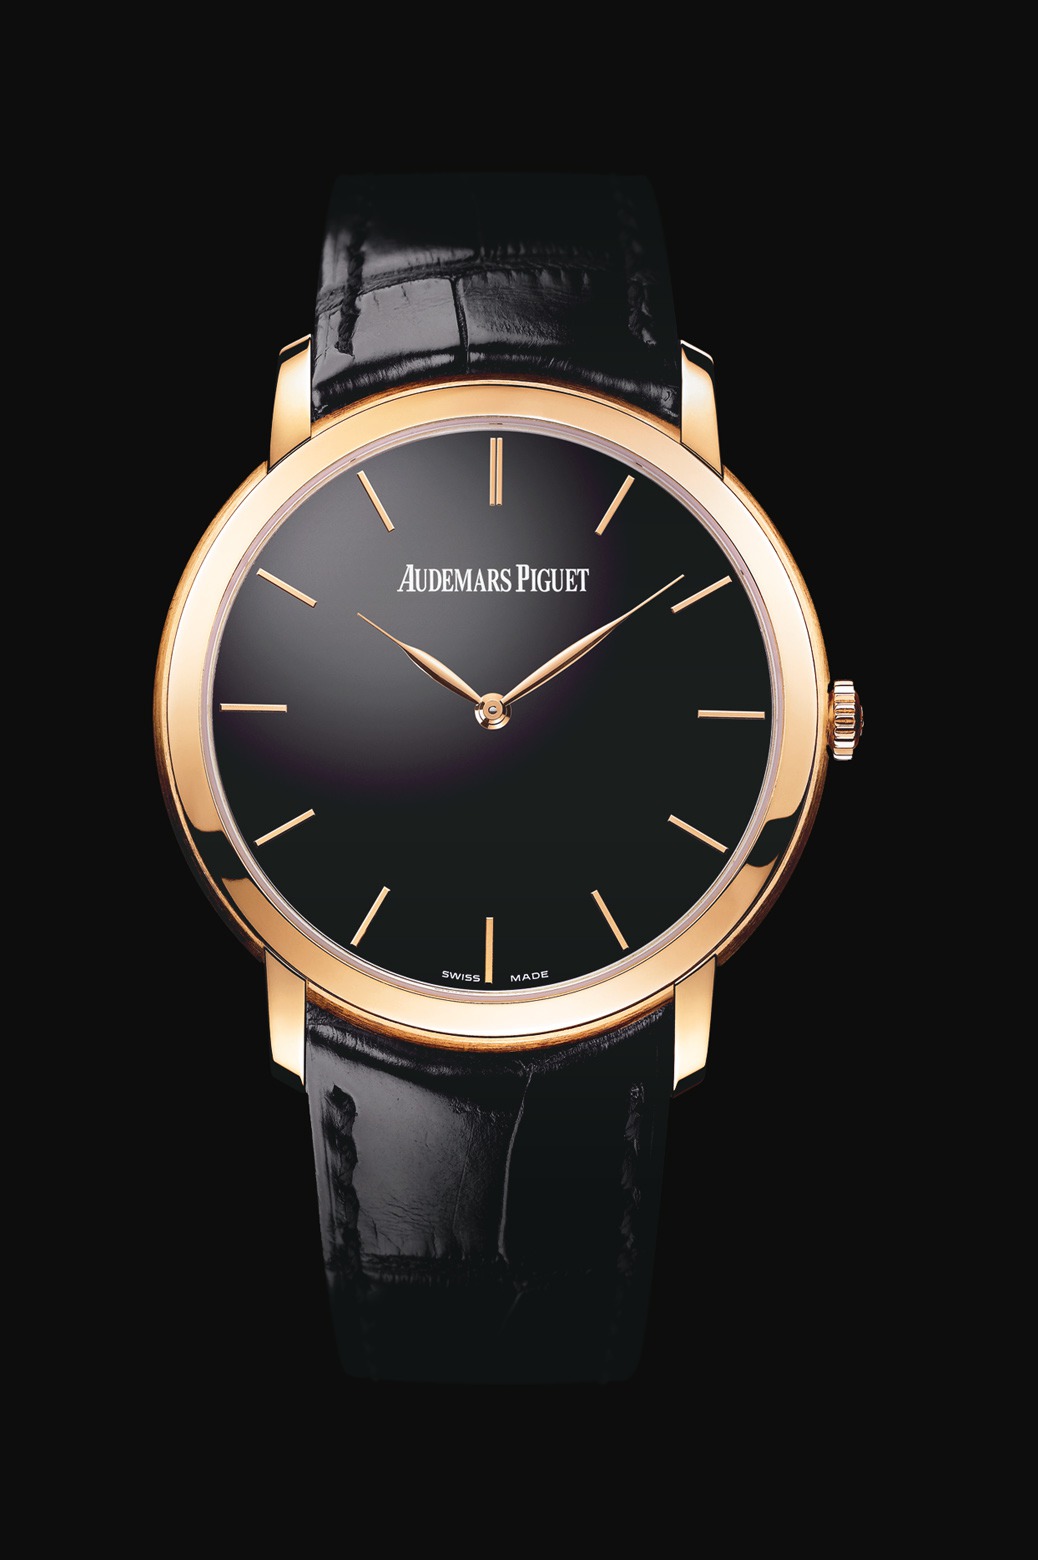 Audemars Piguet Jules Audemars Extra-Thin Pink Gold watch REF: 15180OR.OO.A002CR.01